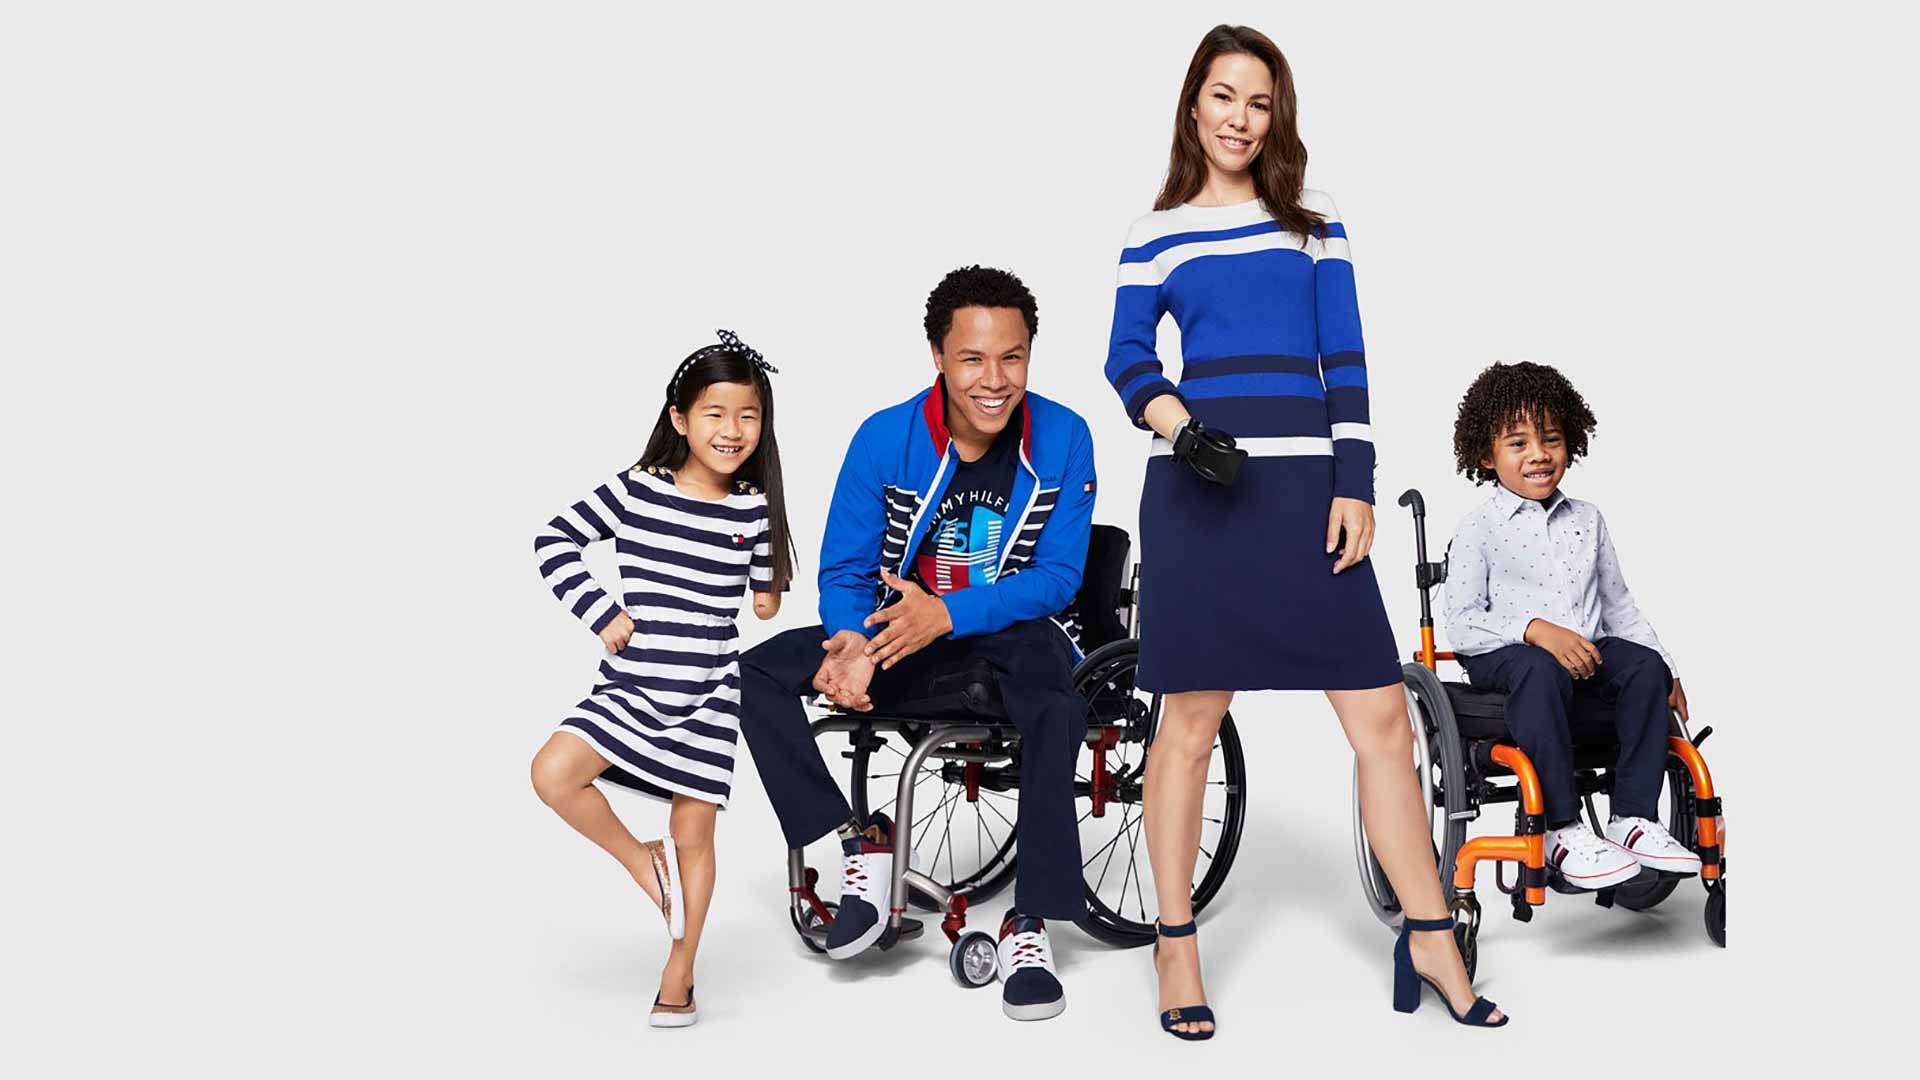 Prendas que se cierran con una mano y bolsos para sillas de ruedas: así llega la inclusividad a la moda